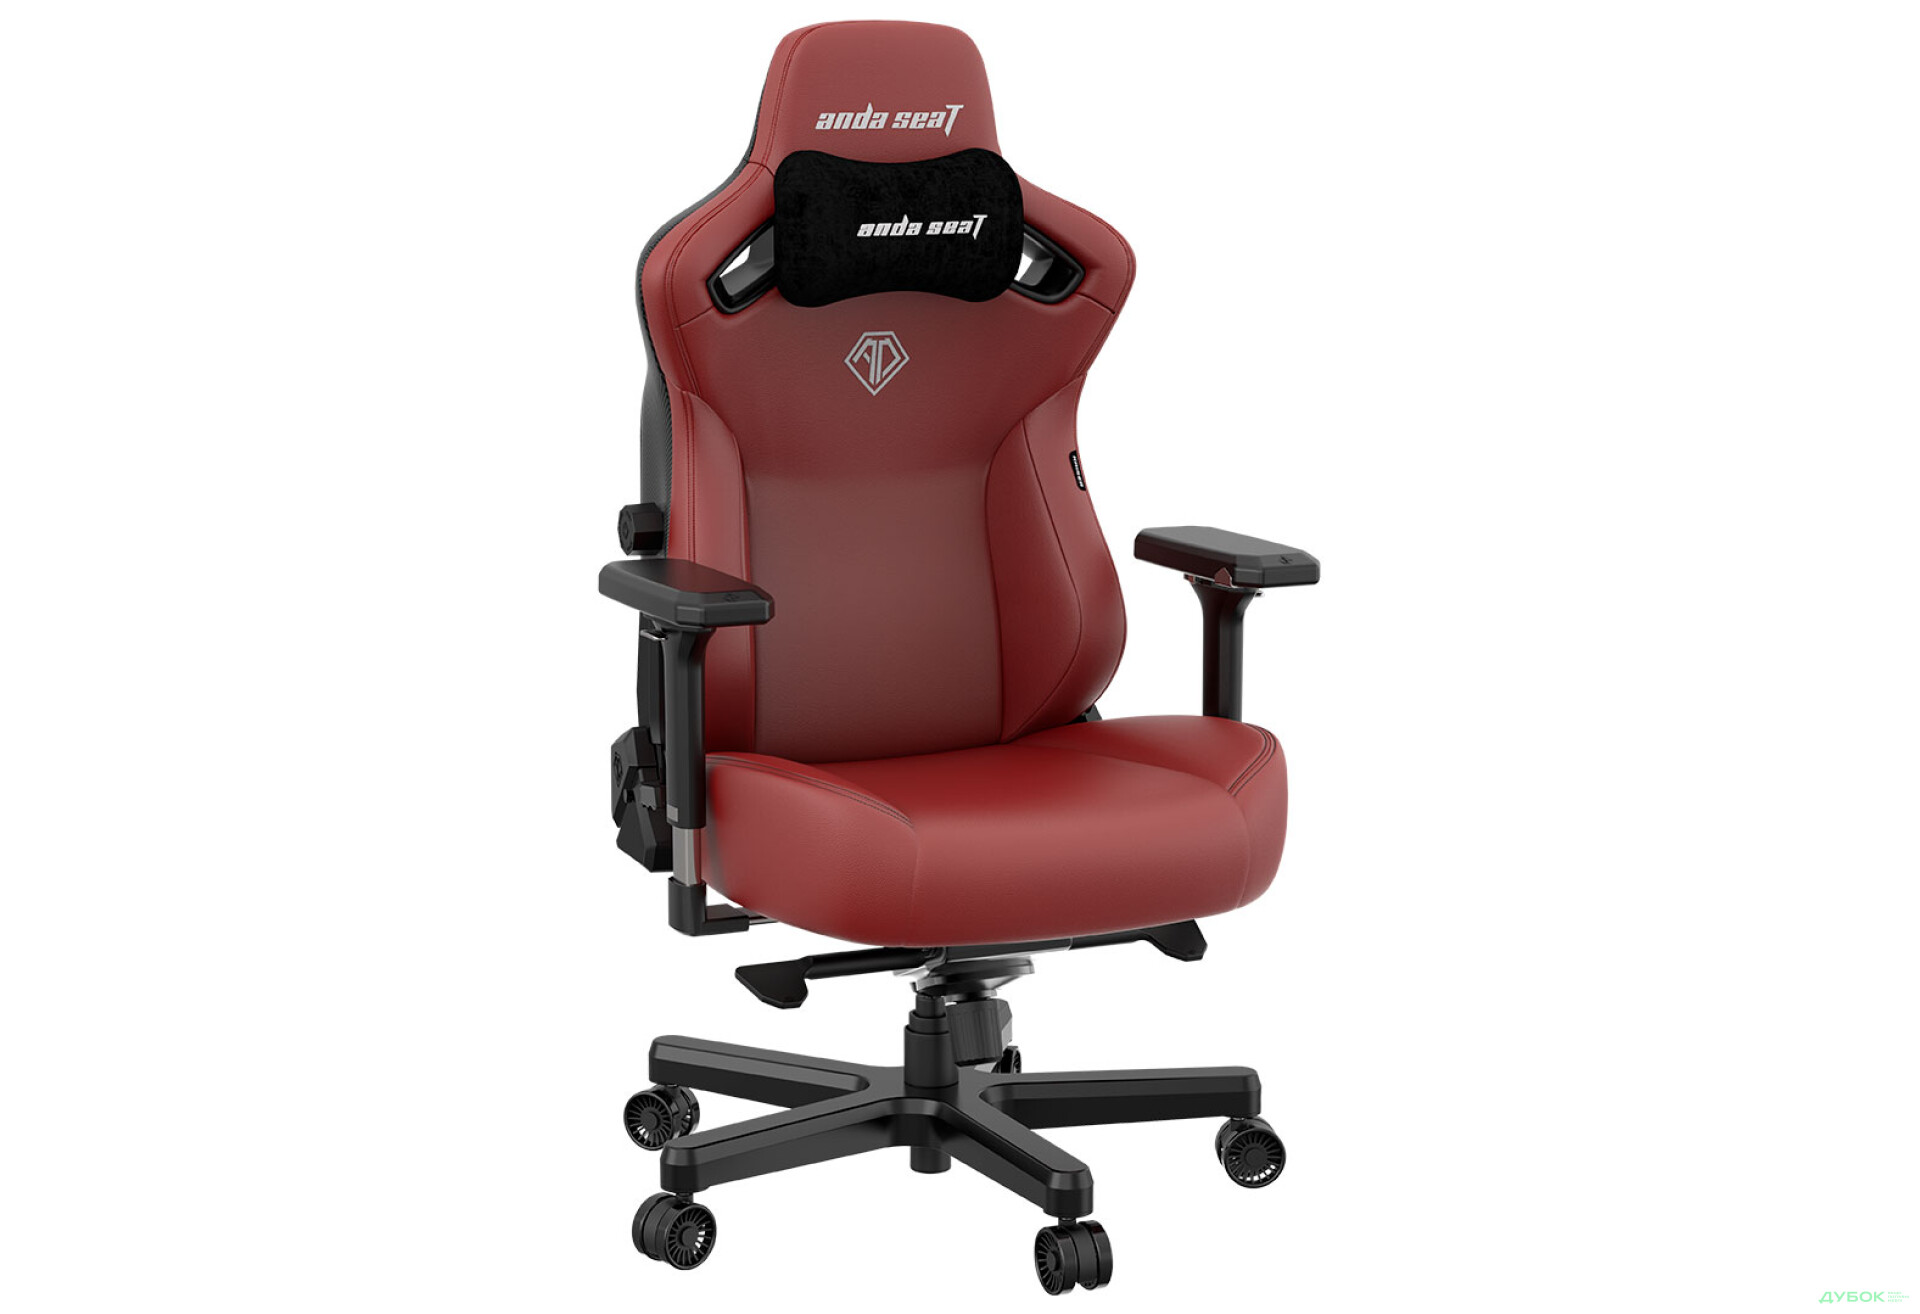 Фото 5 - Компьютерное кресло Anda Seat Kaiser 3 72x57x136 см игровое, бордовое